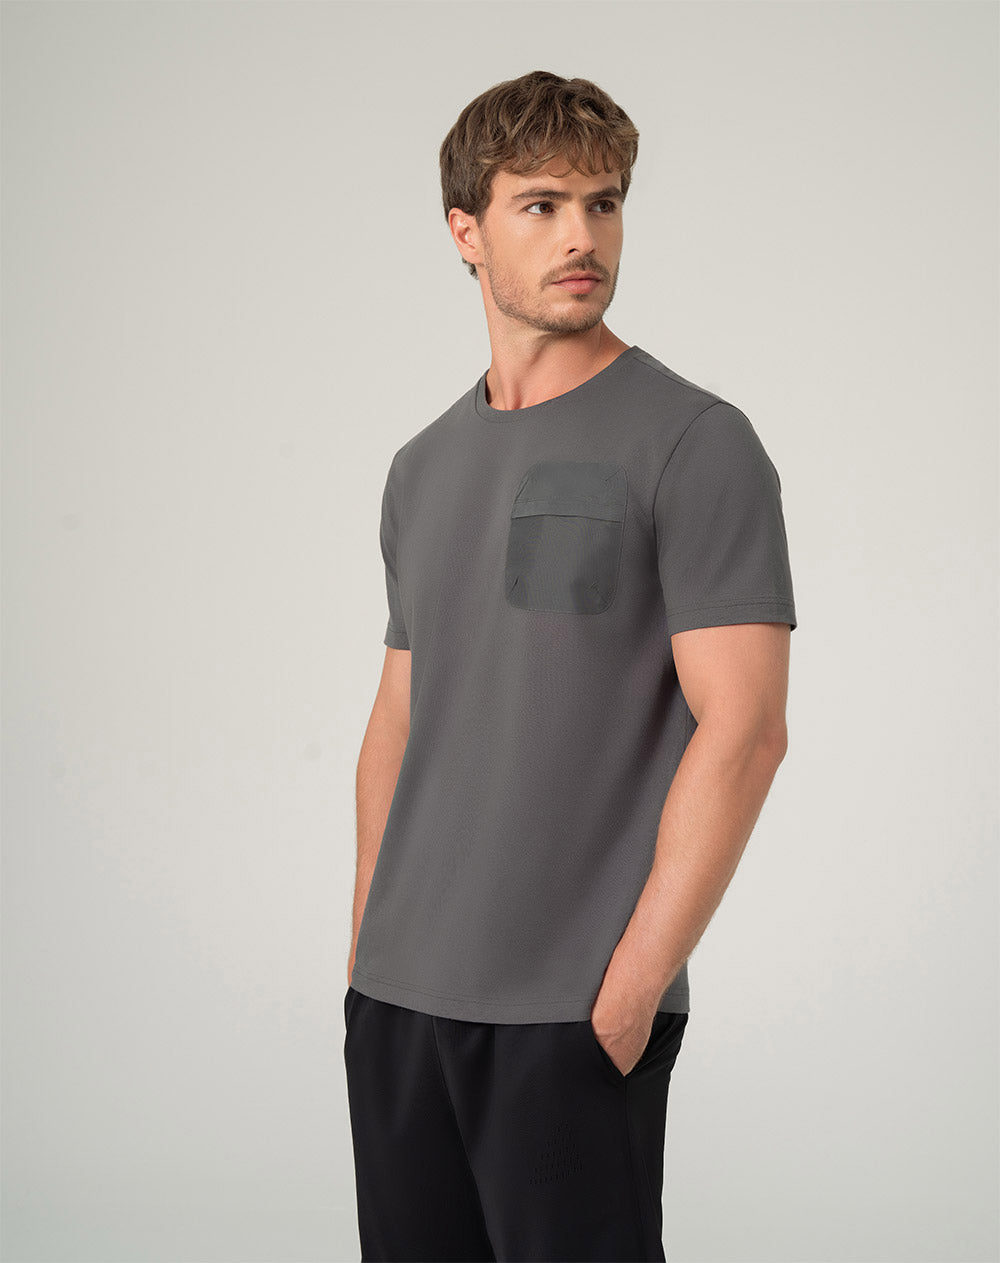 Camiseta regular fit manga corta gris oscura